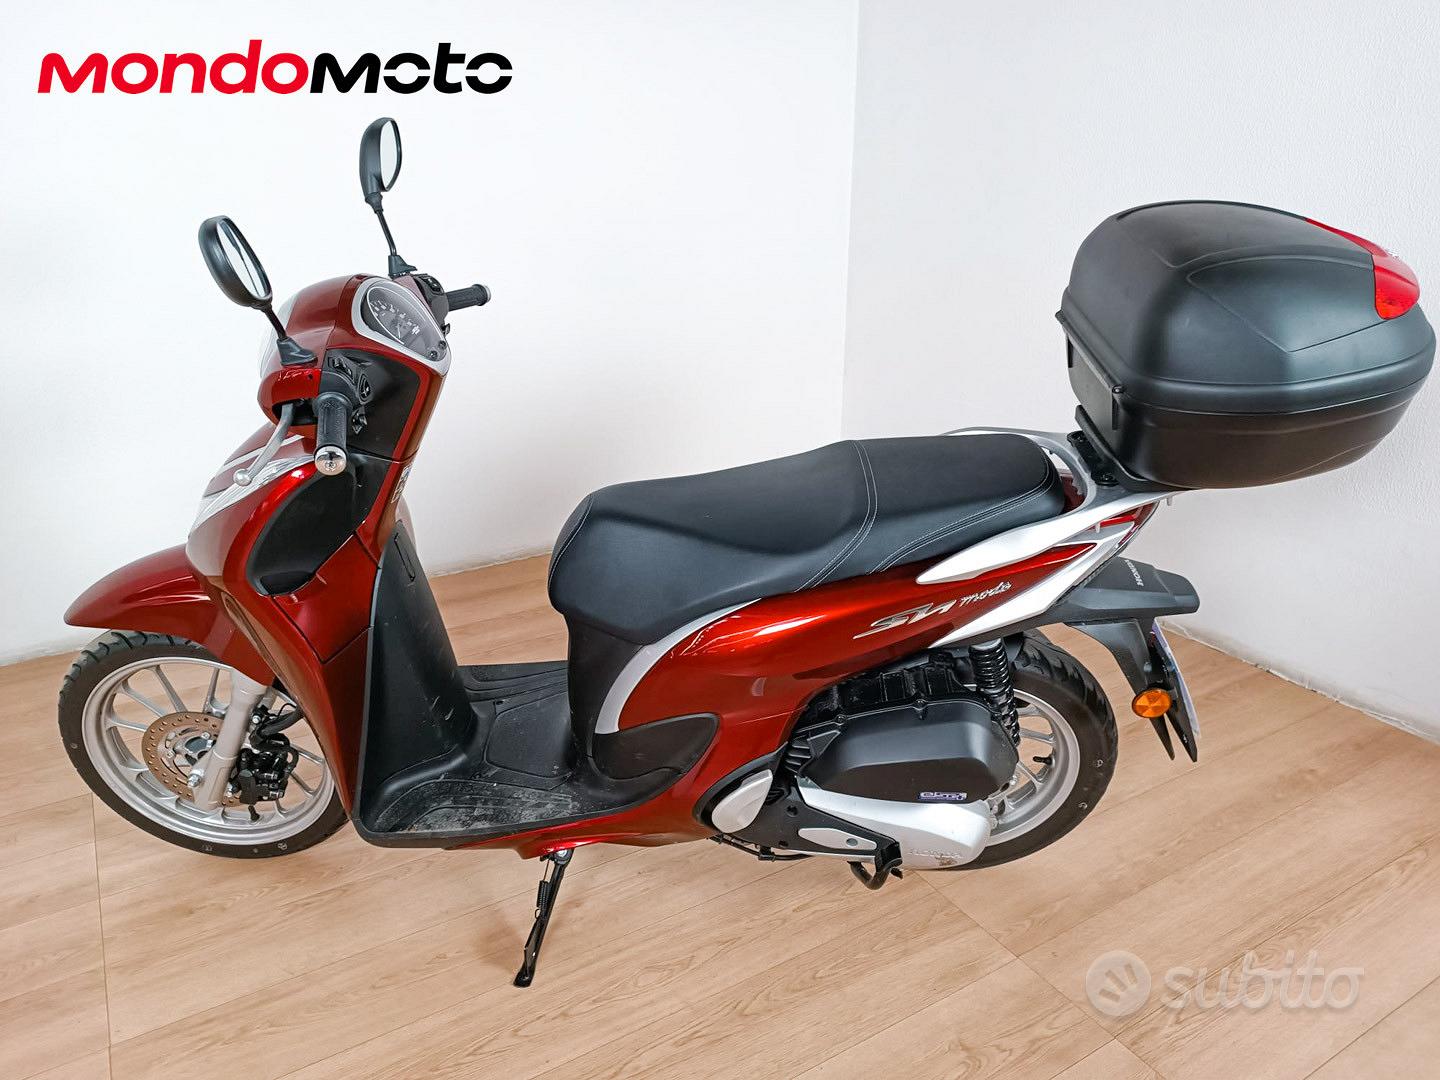 Subito - Mondomoto Verona - HONDA SH 125I ABS - 2022 Passaggio incluso -  Moto e Scooter In vendita a Verona